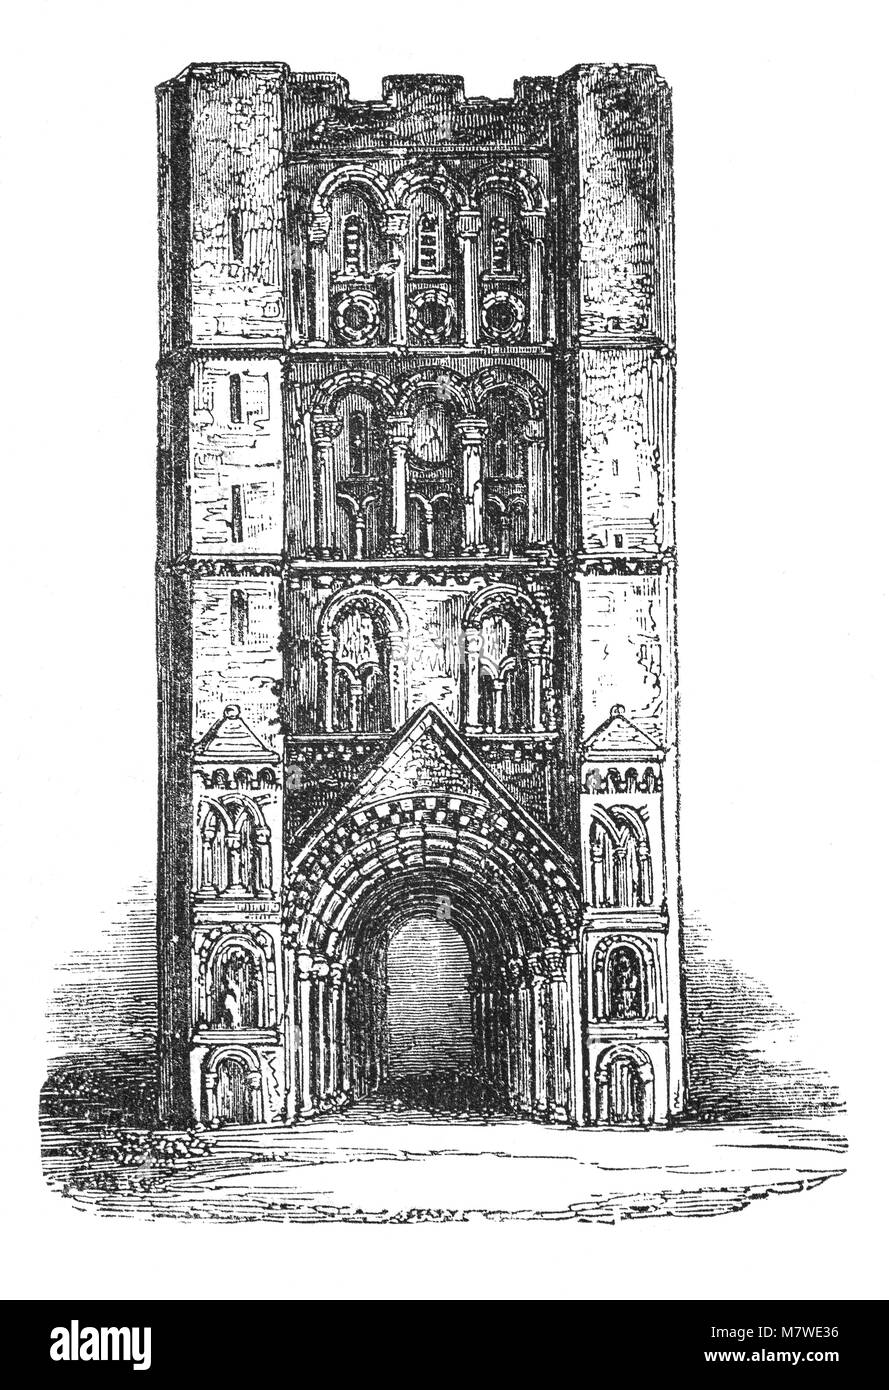 La passerelle de l'abbaye normande, comme c'est en Saxe. Il a été l'entrée de l'un des plus riches monastères bénédictins en Angleterre, jusqu'à la dissolution des monastères en 1539. Il a été le lieu de sépulture de l'anglo-saxon-martyr Saint roi Edmund, tués par la Grande Armée païenne de danois en 869 et devint un centre de pèlerinage, Suffolk, Angleterre Banque D'Images